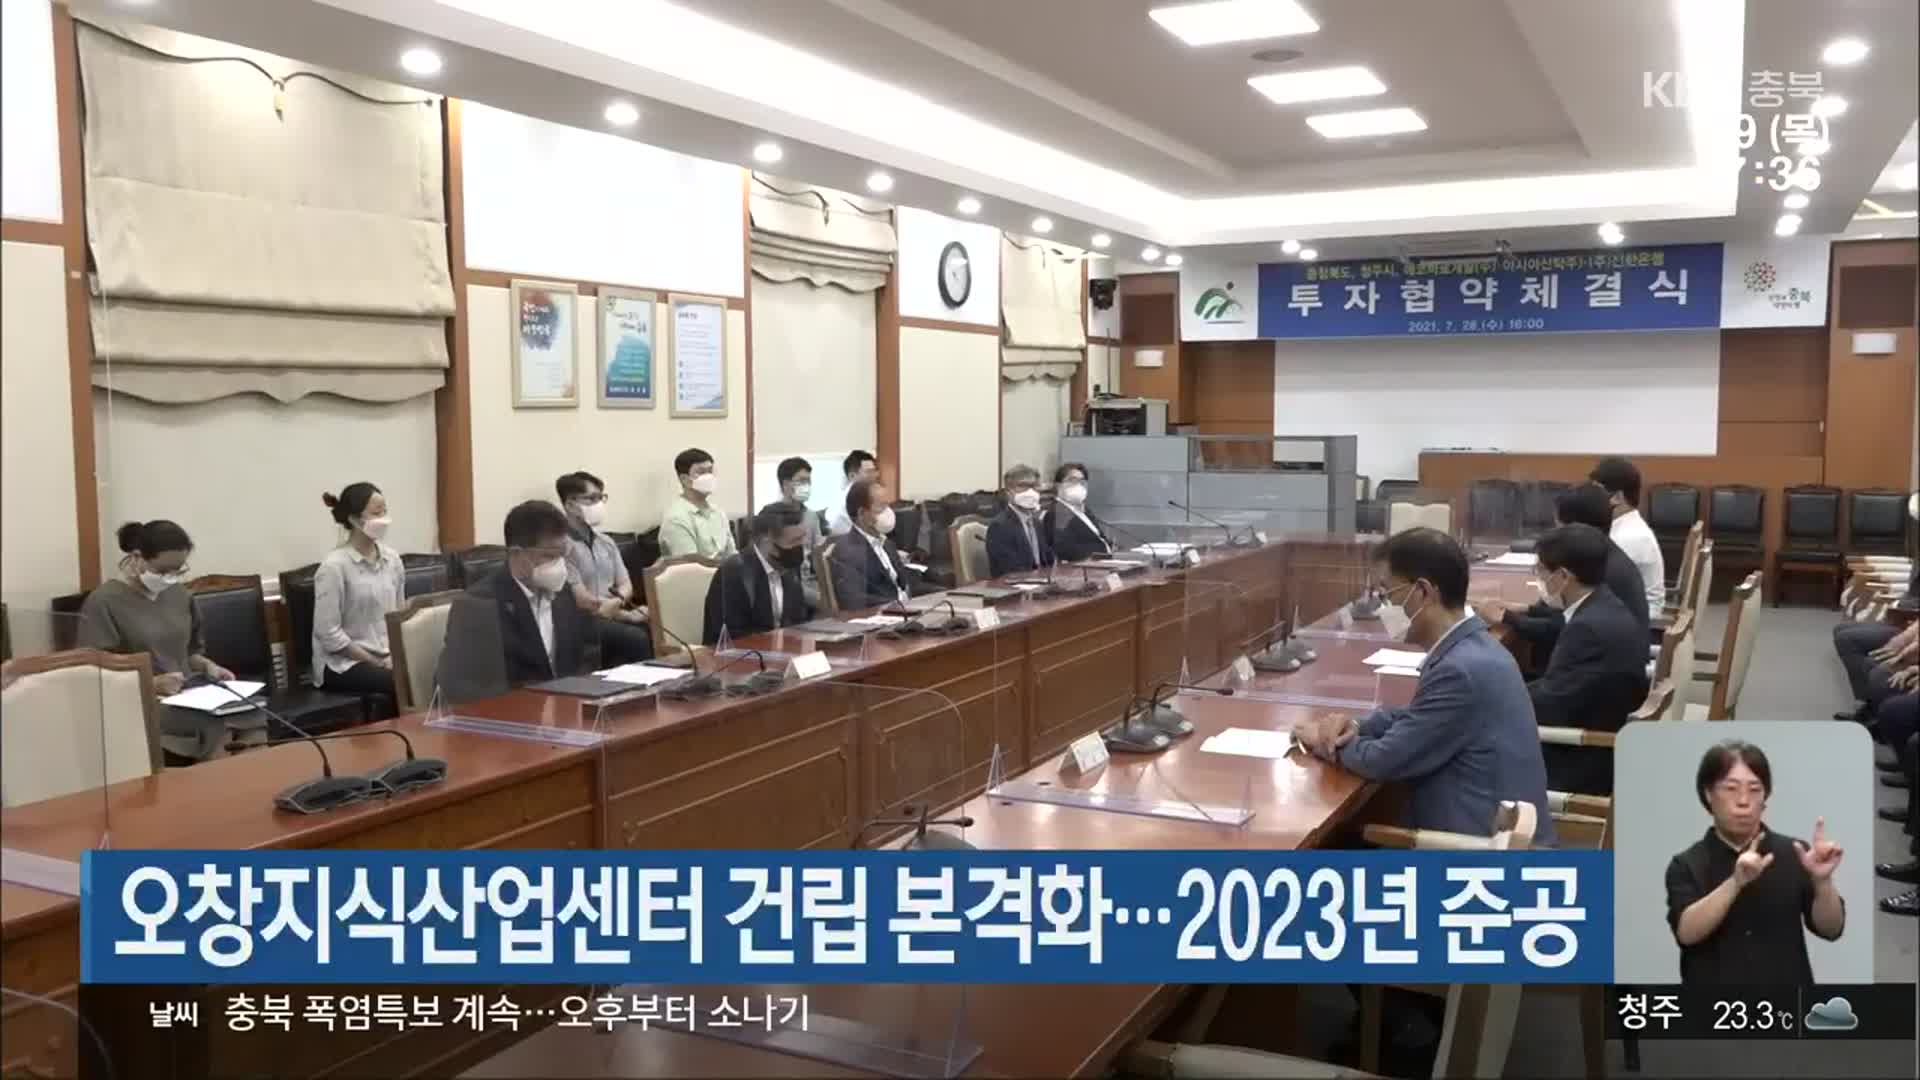 오창지식산업센터 건립 본격화…2023년 준공